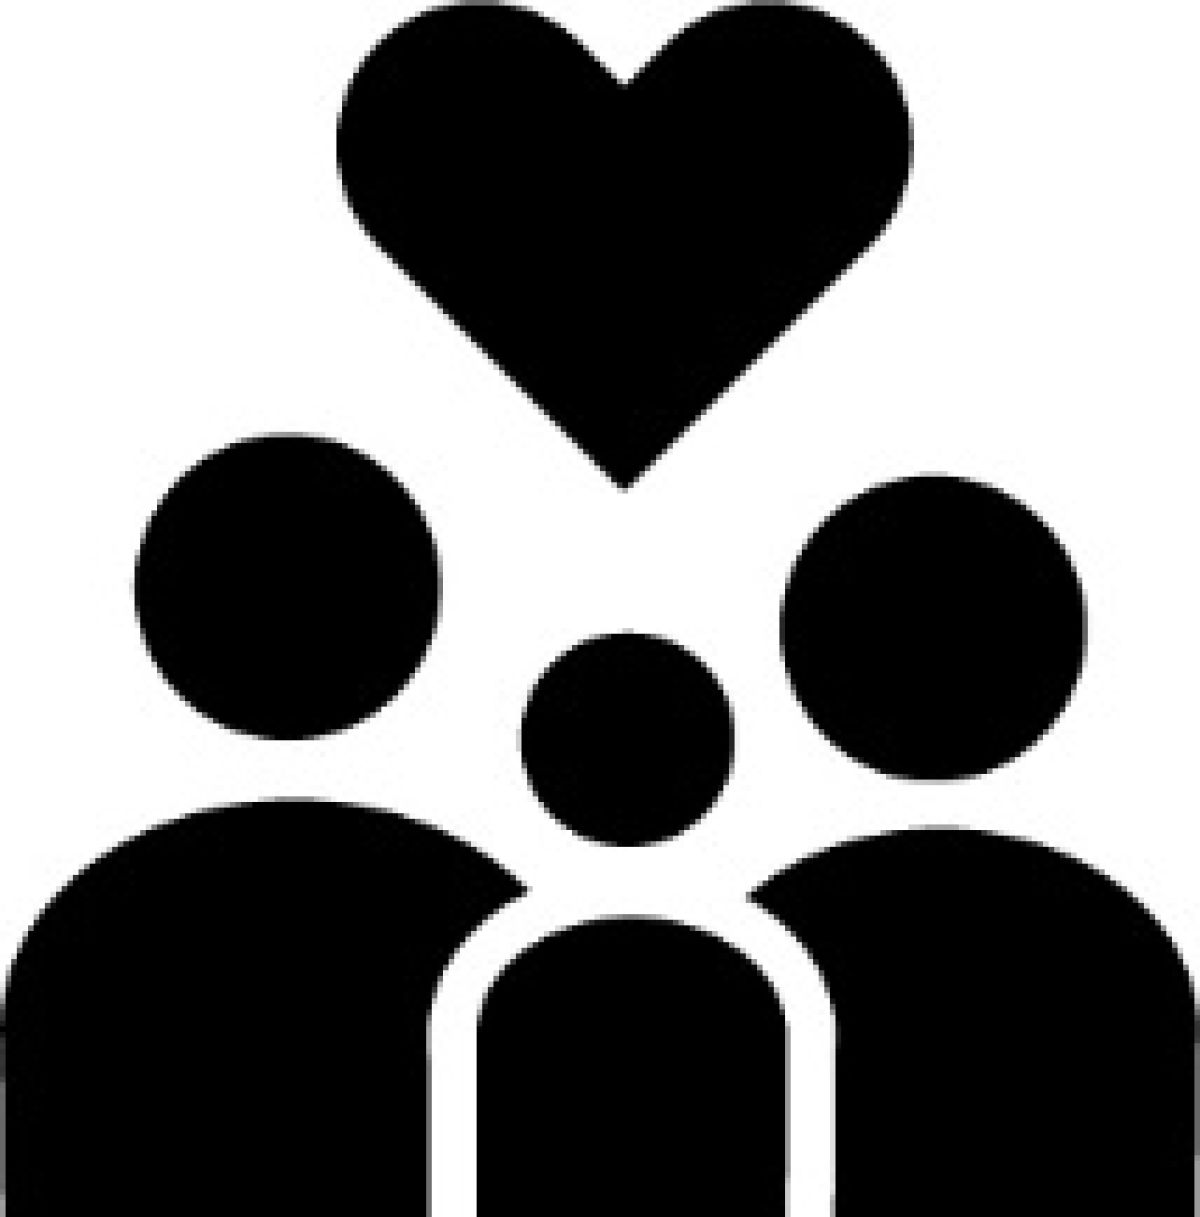 Familien-Icon